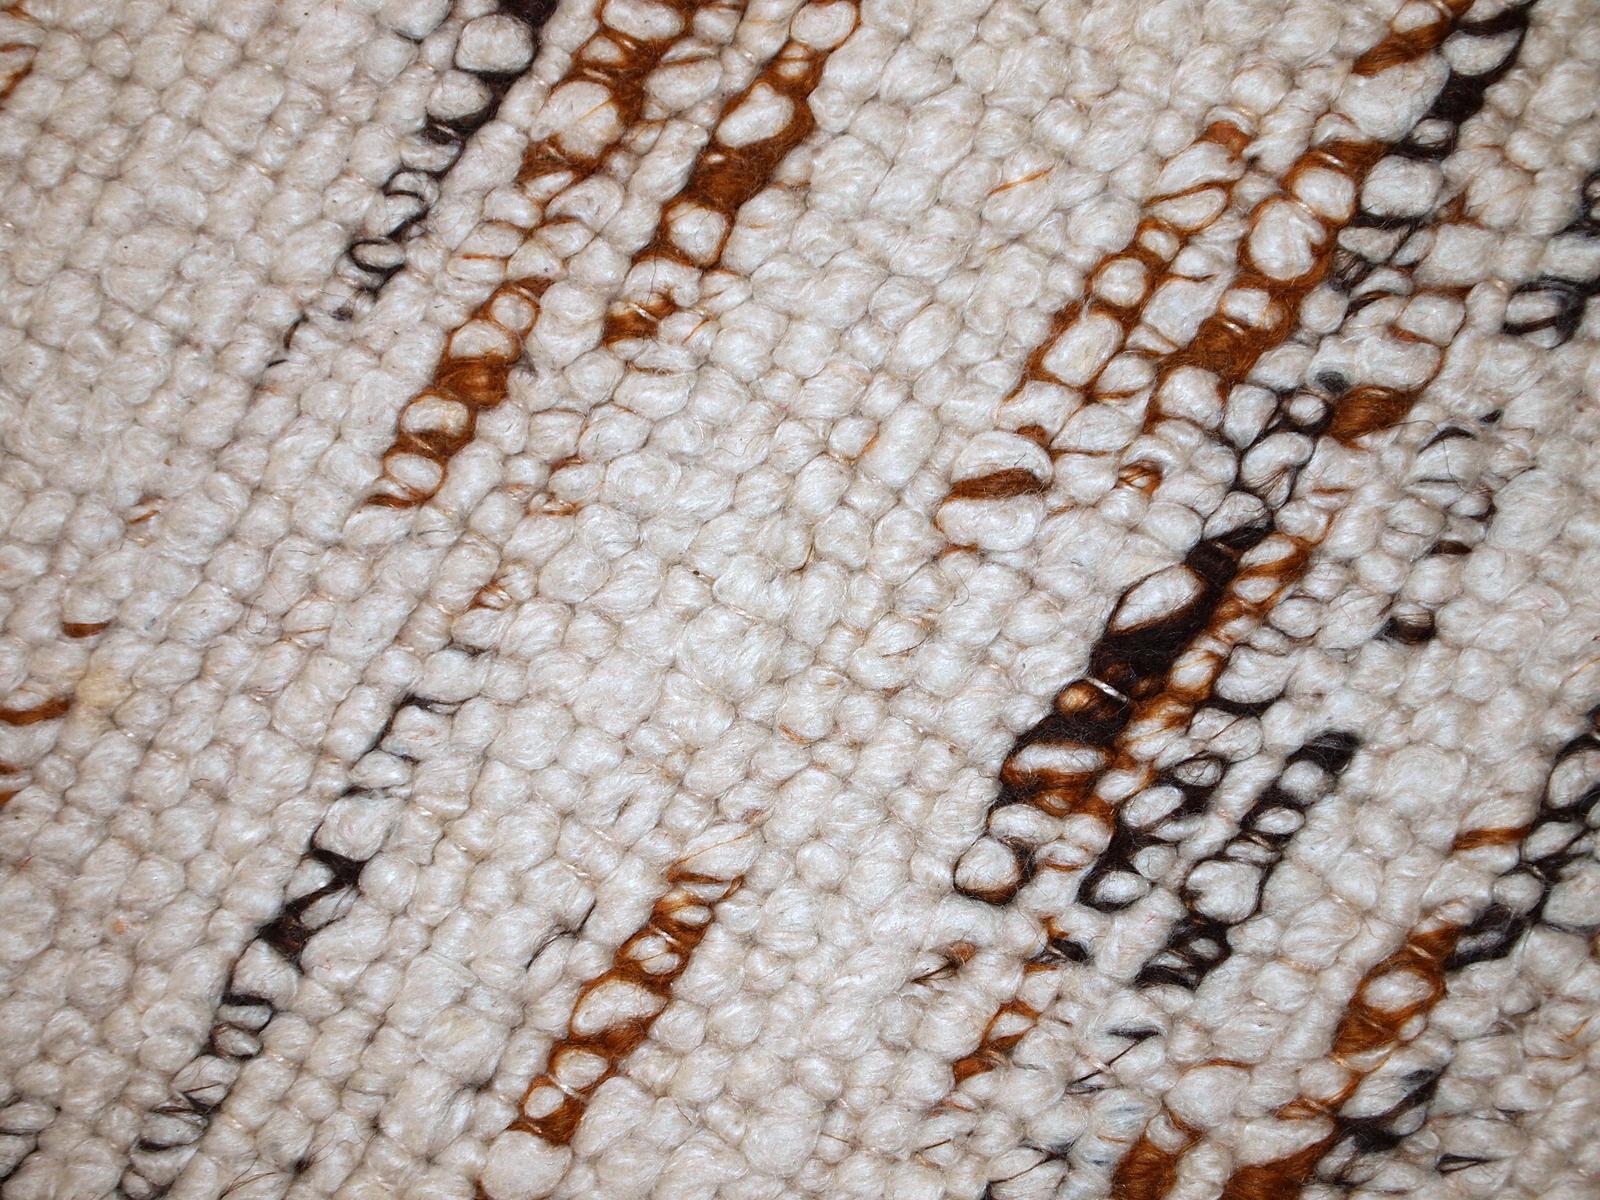 Handgefertigter beigefarbener indischer Läufer aus Wolle. Es ist sehr weich. Der Teppich ist in einem guten Originalzustand.

- Zustand: original gut,

- etwa: 1980er Jahre,

- Größe: 2,9' x 12,3' (90cm x 375cm),

- Material: Wolle,

-